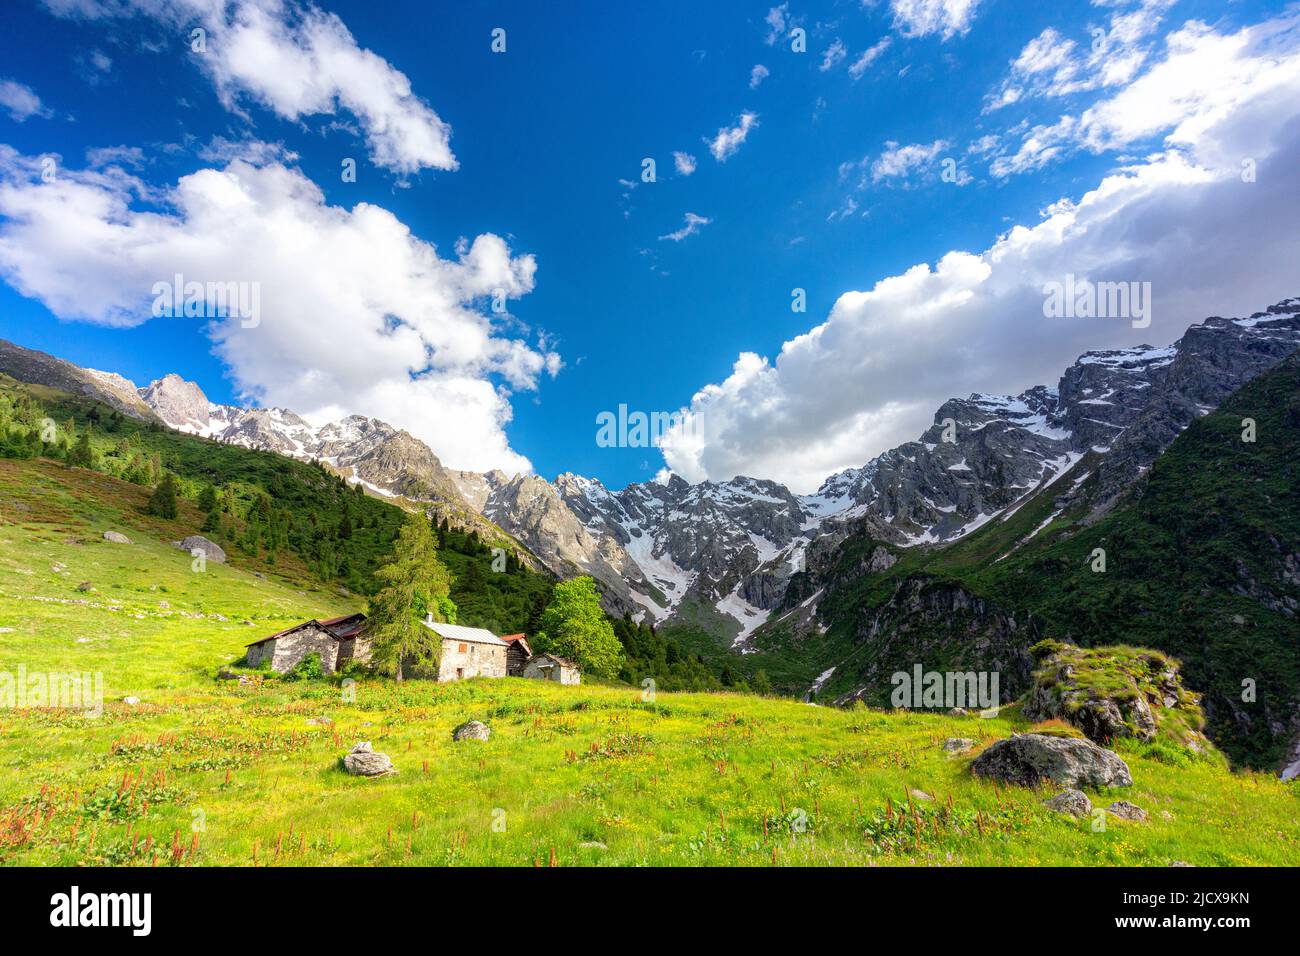 Einsame traditionelle Gruppe von Hütten in einem wilden Alpental, Val d'Arigna, Orobie, Valtellina, Lombardei, Italien, Europa Stockfoto